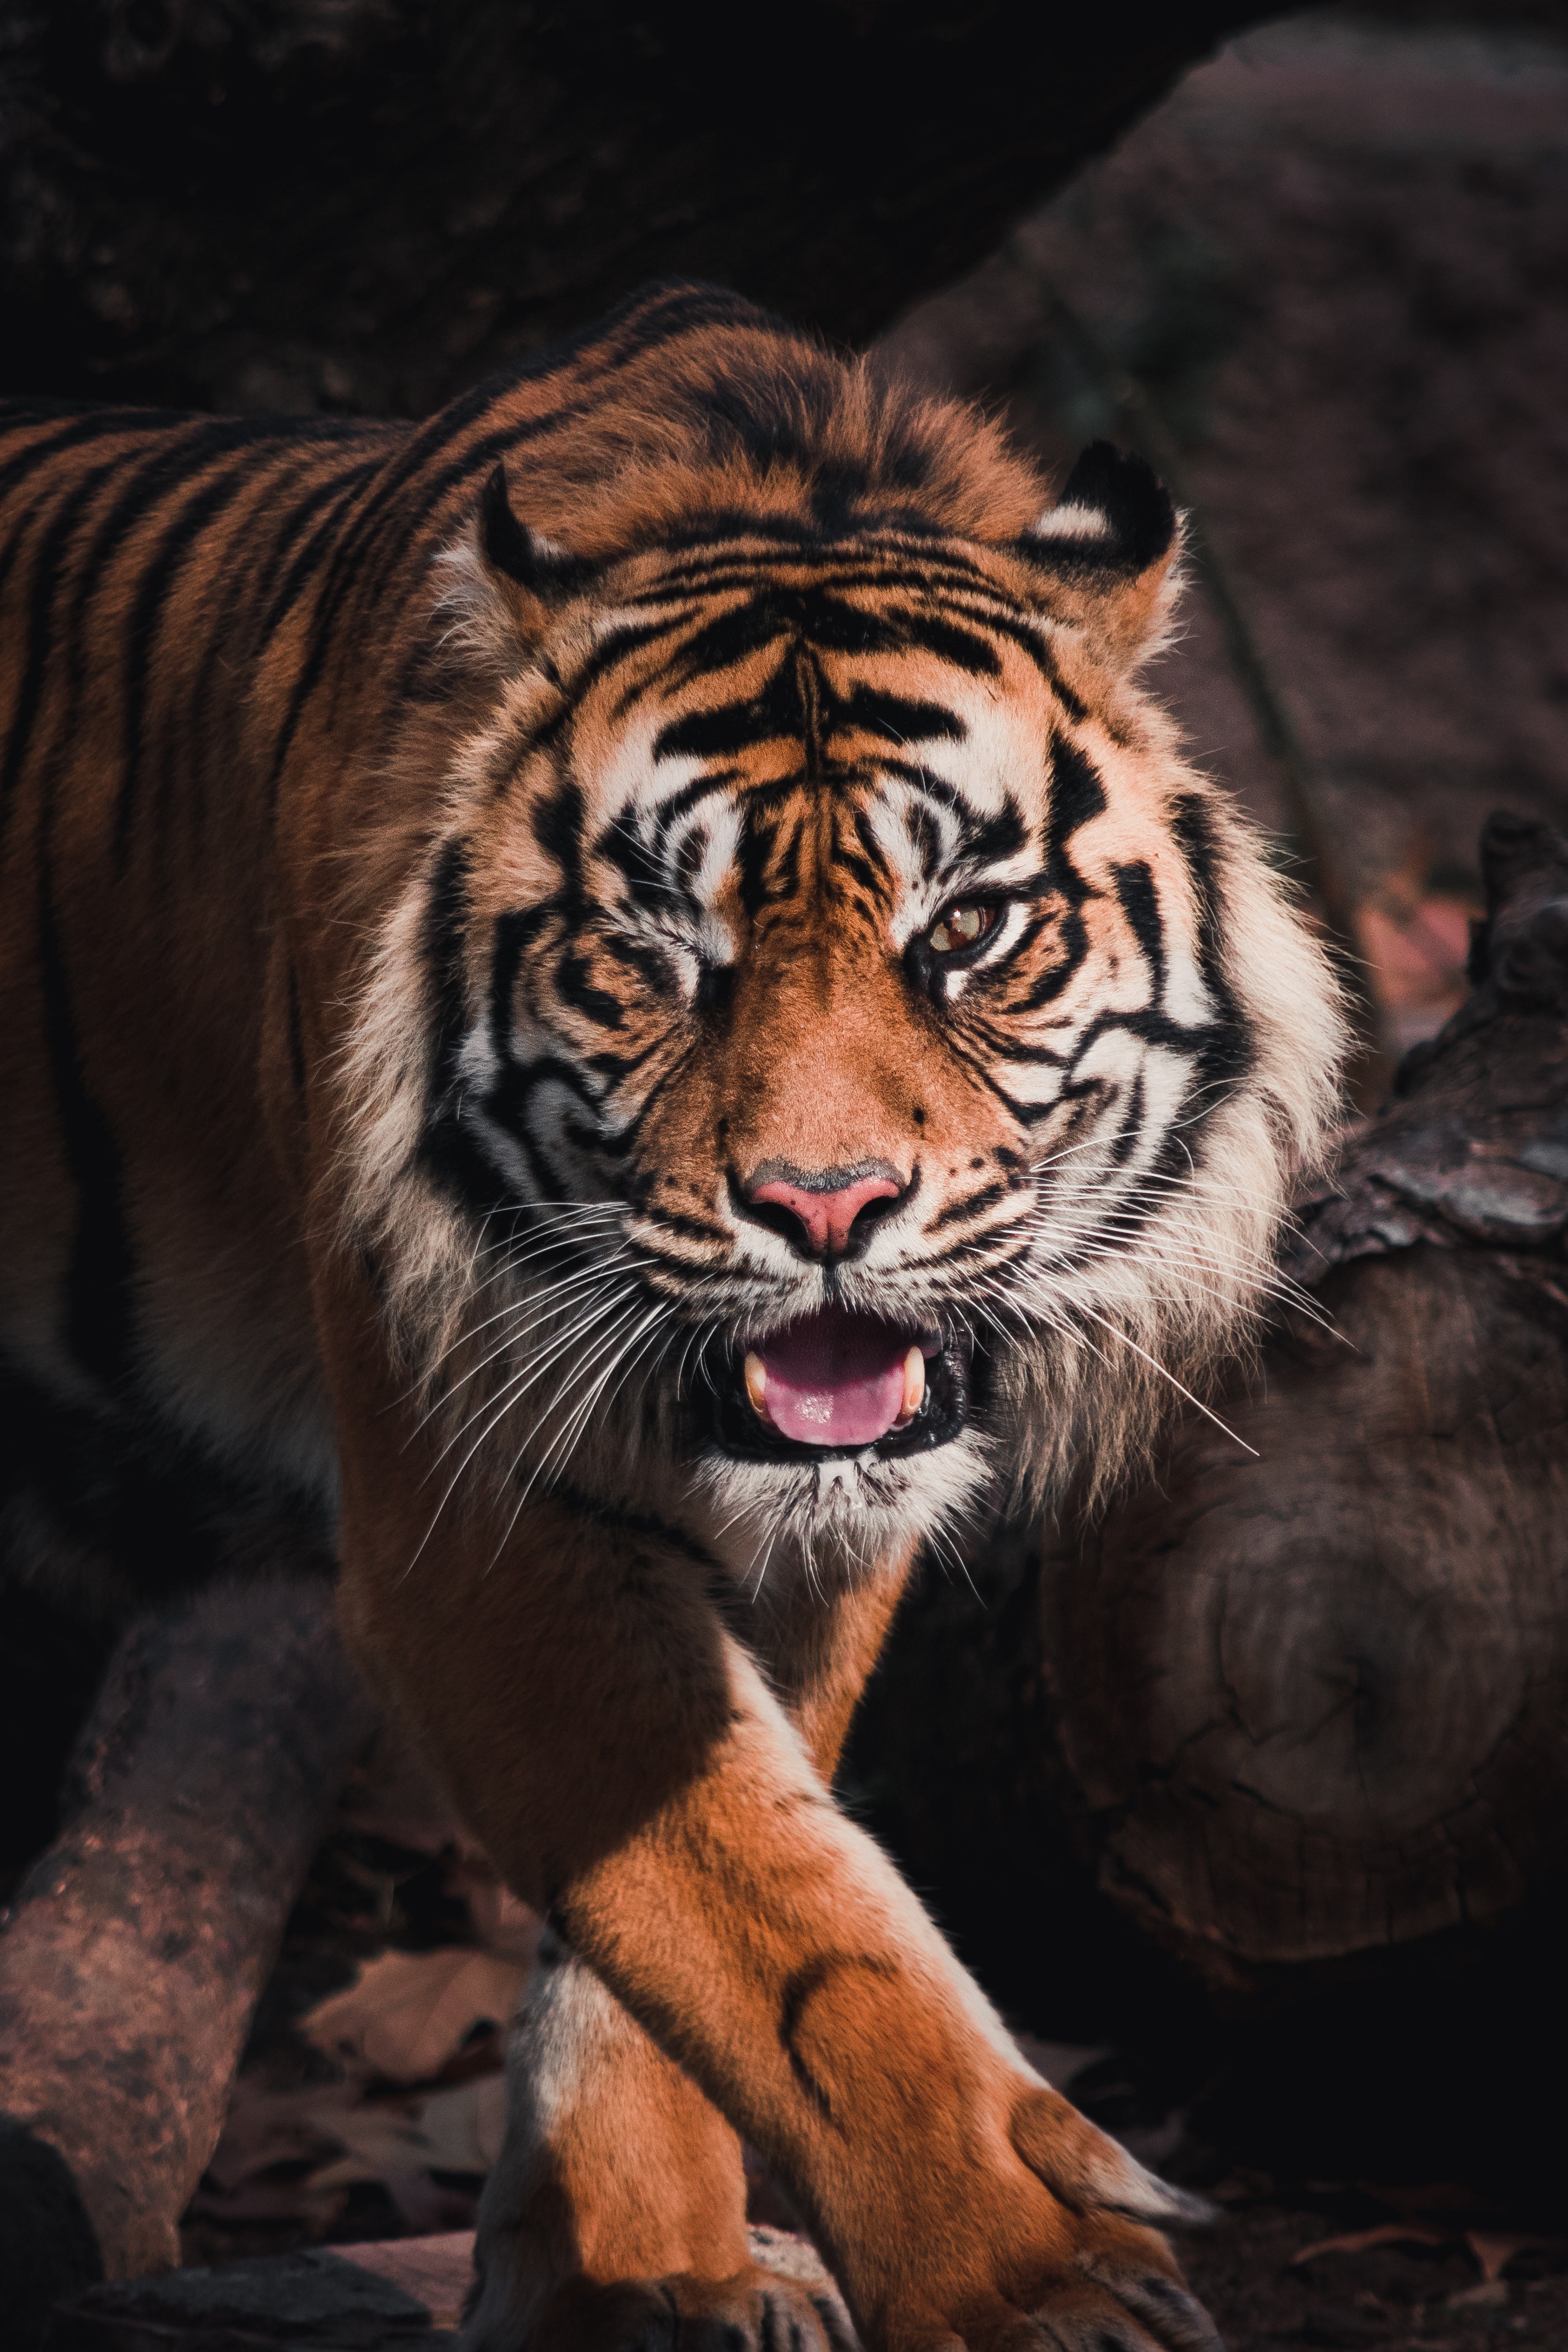 Best Sumatran Tiger Photo · 100% Free Downloads